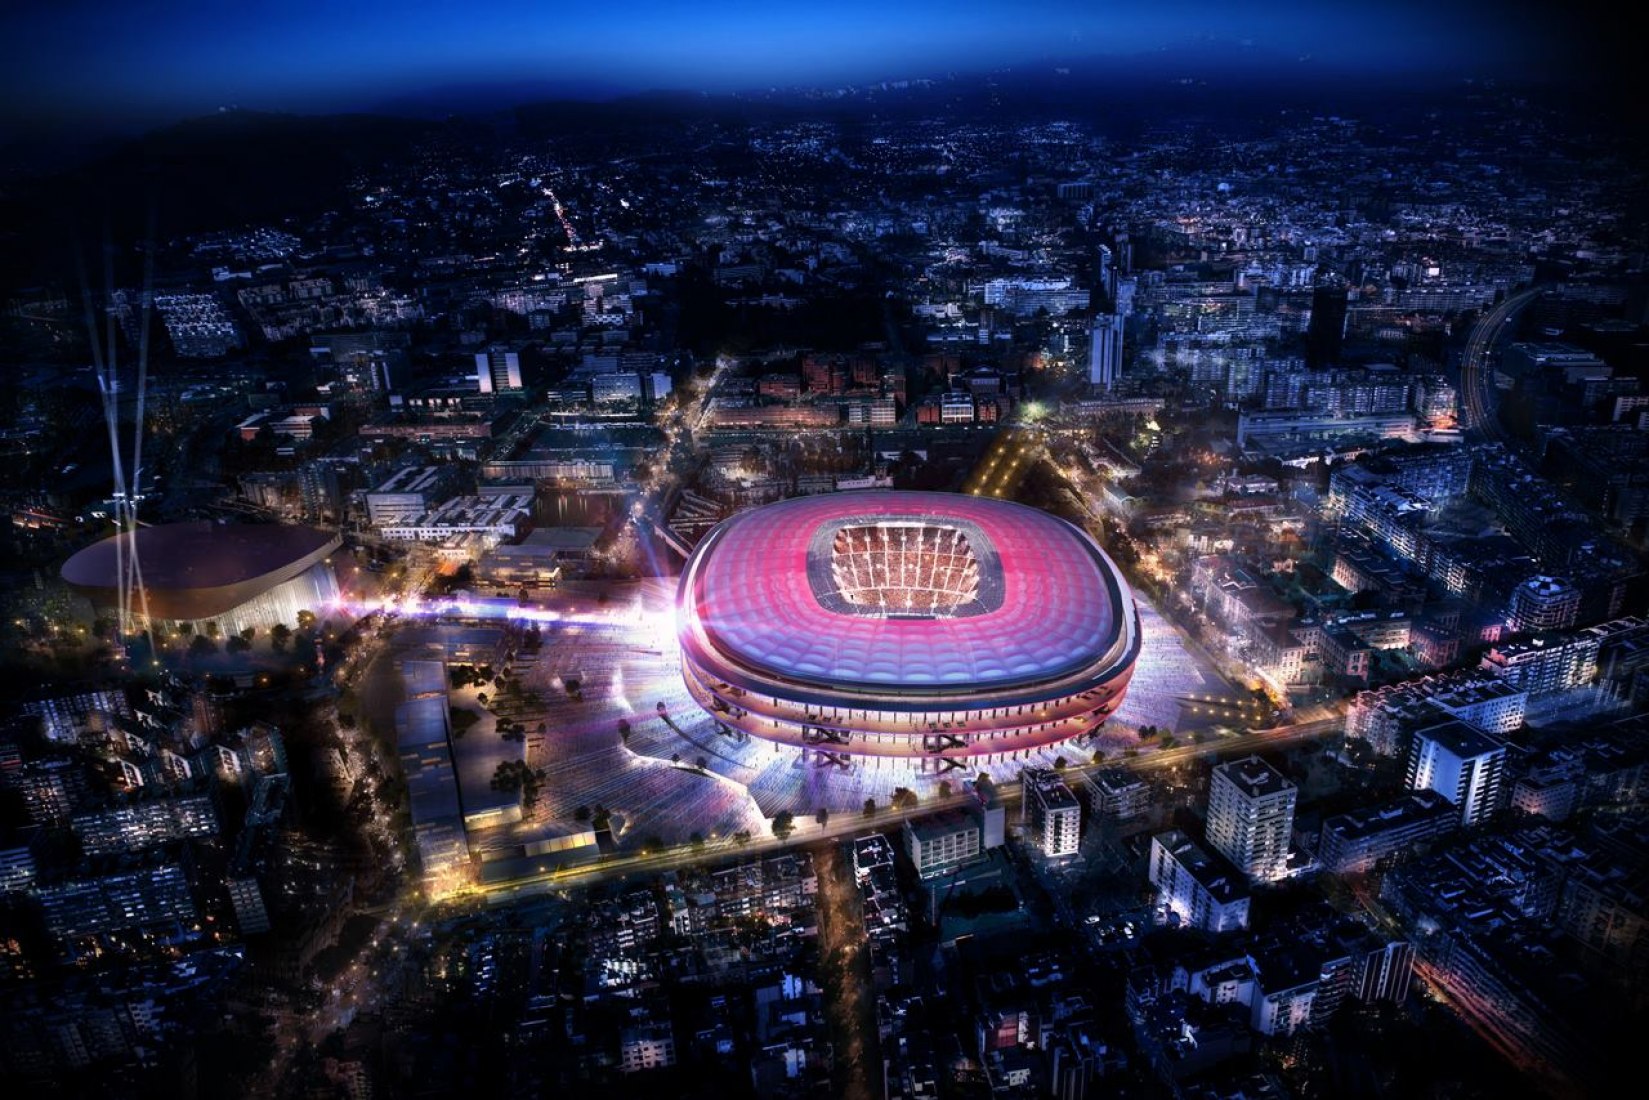 Vista general. Nuevo estadio del FC. Barcelona diseñado por Nikken Sekkei + Pascual i Ausió Arquitectes. Imagen cortesía de FC Barcelona.